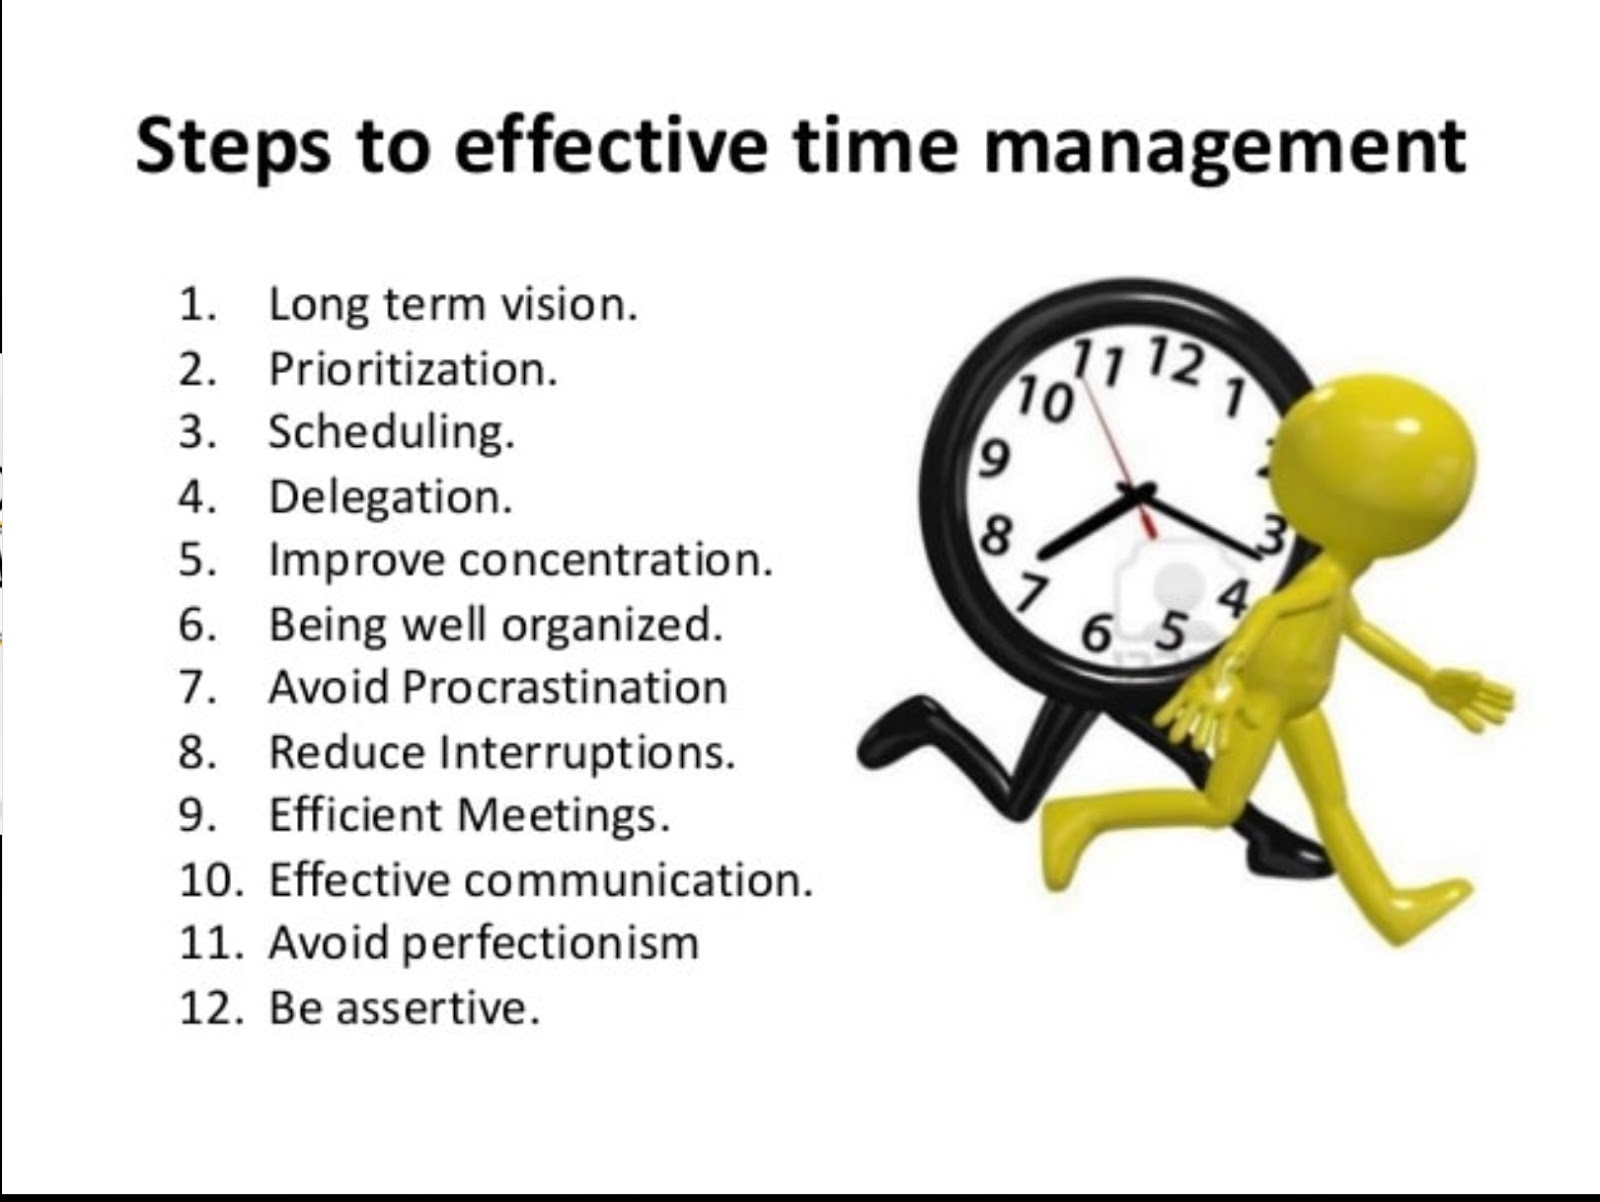 During время. Тайм-менеджмент (time Management). Управление временем. Time Management skills. Управление временем картинки.